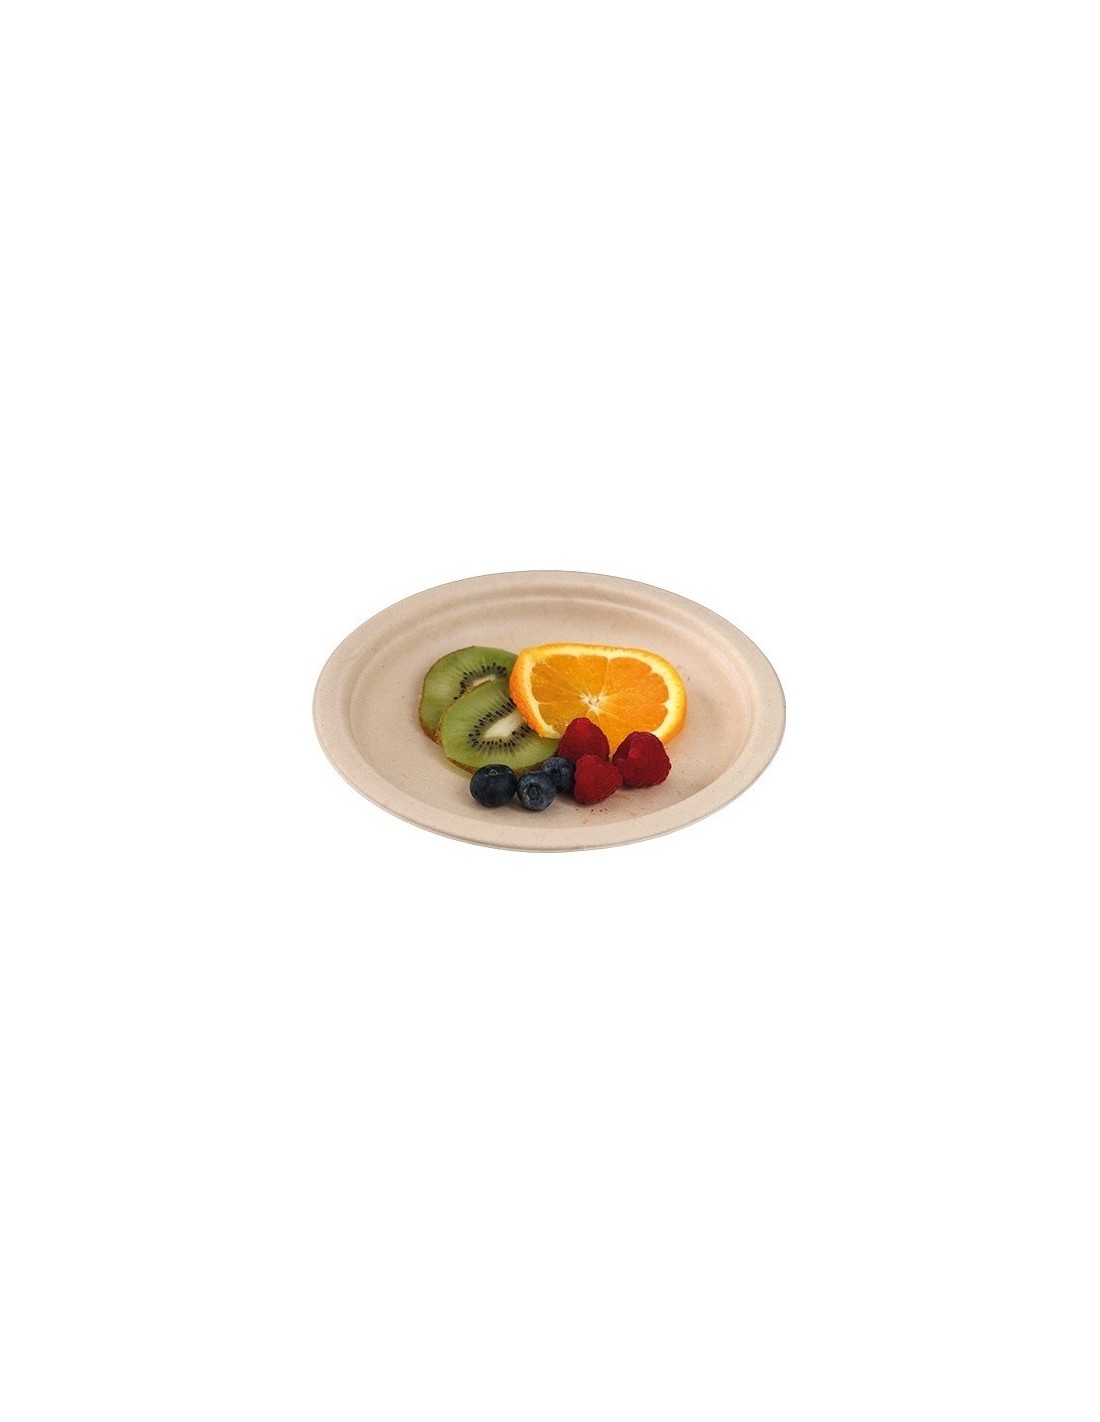 Piattini dessert 18 cm non sbiancati ☘️Piatti biodegradabili Confezione  500 pezzi